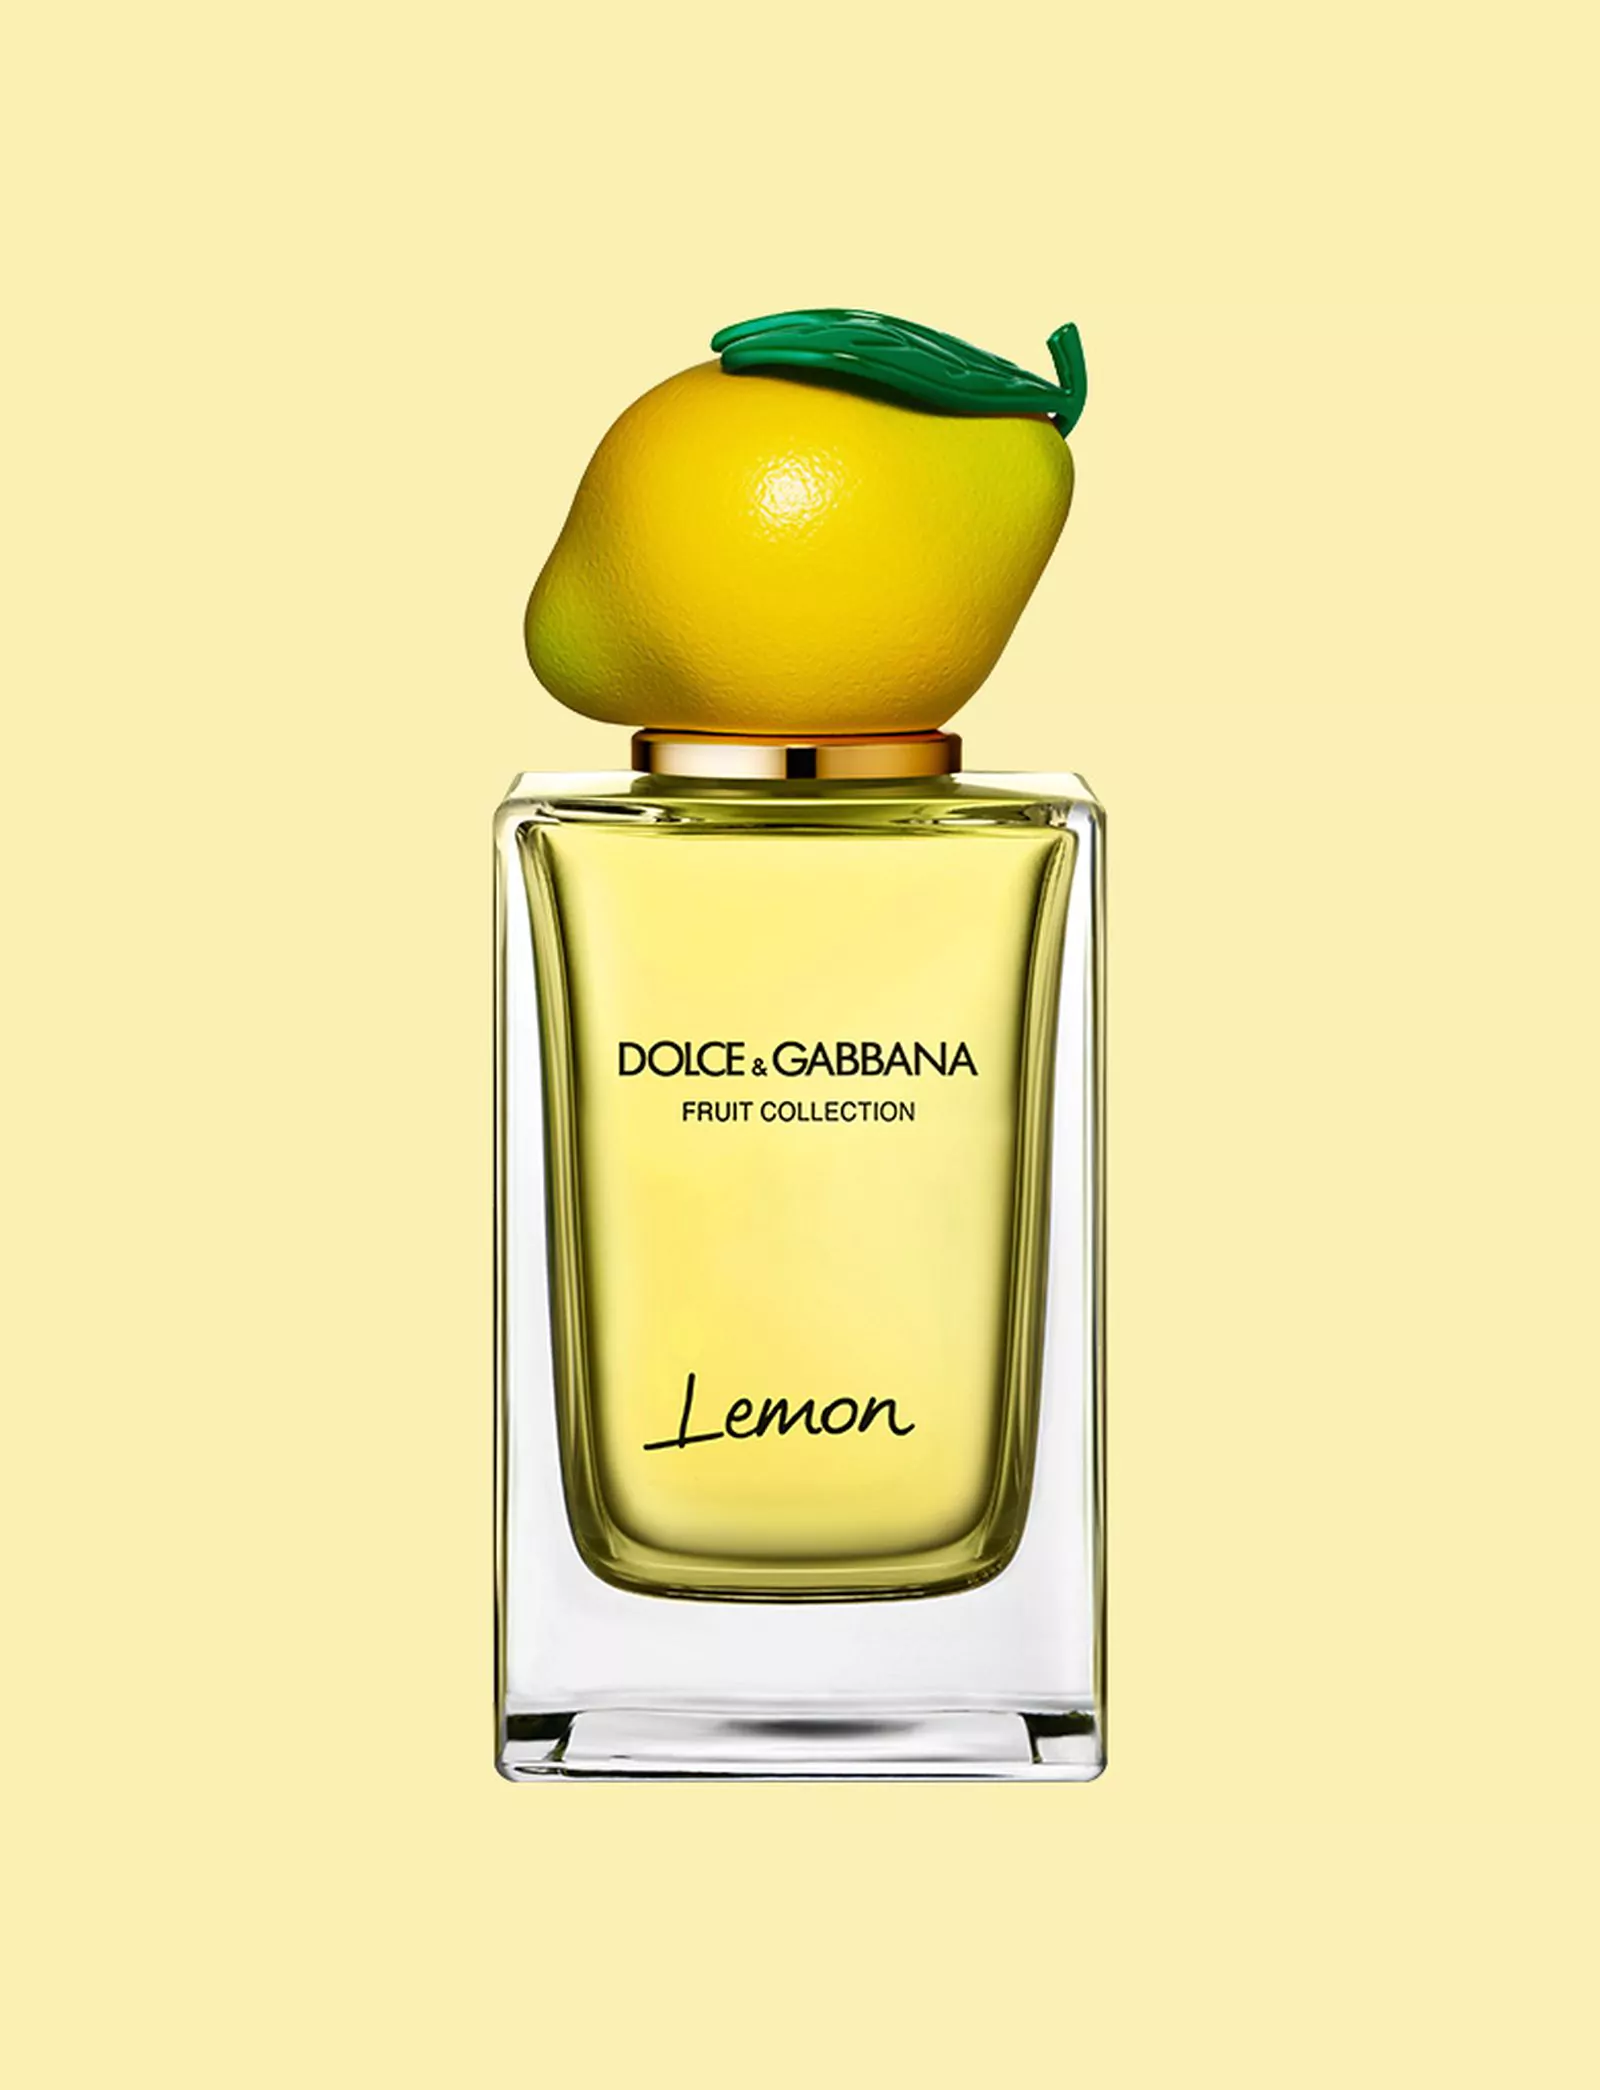 Dolce&Gabbana, Lemon